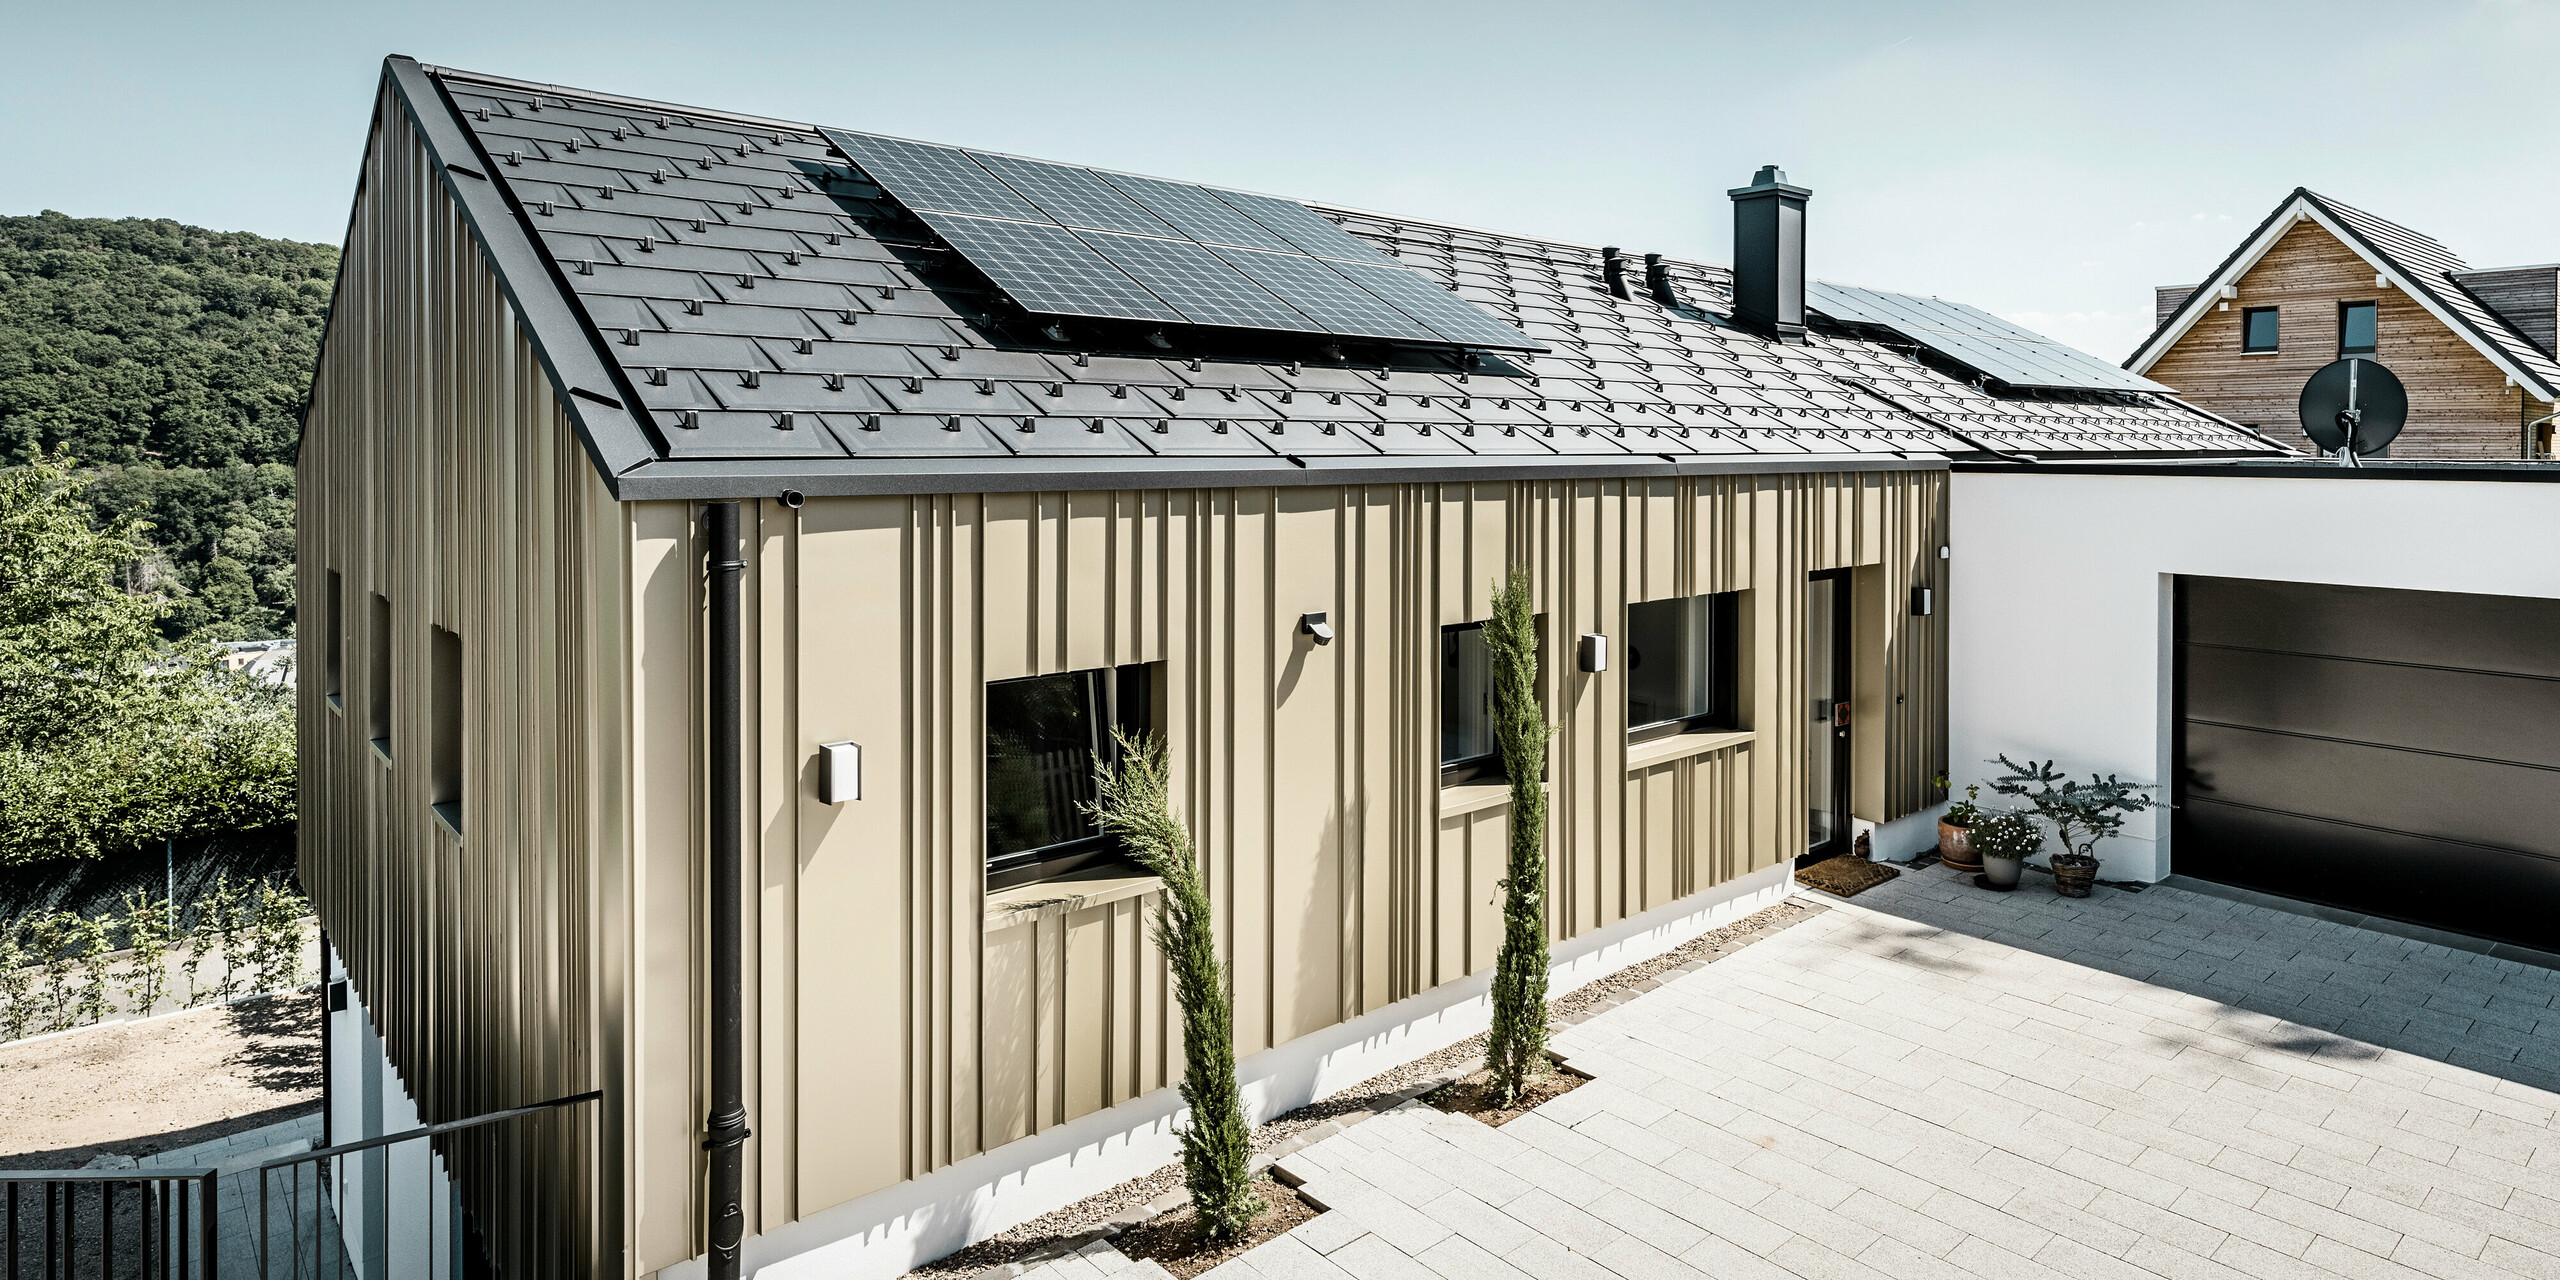 Ein Neubau in Bad Münstereifel wurde eingedeckt mit der PREFA Dachplatte R.16 in anthrazit. Auf dem Dach befindet sich eine Photovoltaik-Anlage. Die Winkelfalzfassade besteht aus Falzonal in lichtbronze.